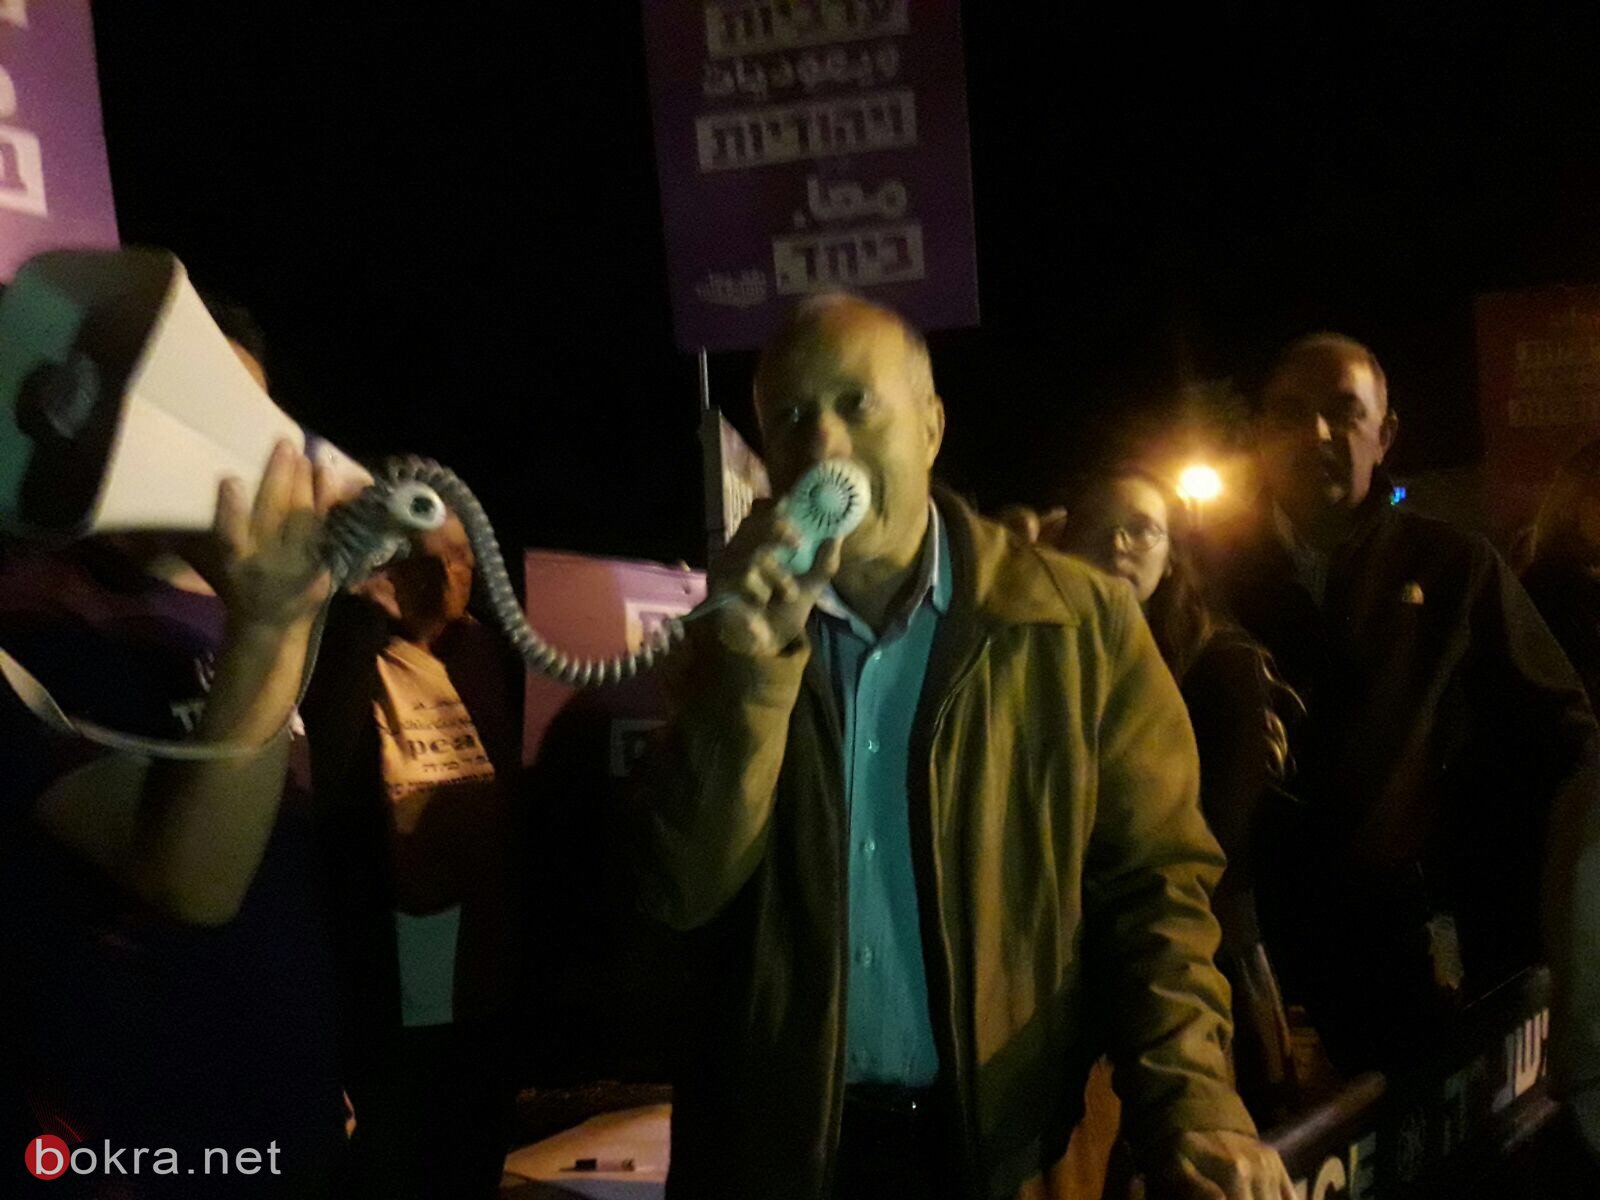 تظاهرة عربية - يهودية قبالة بيت رئيس مجلس كفار فراديم -1